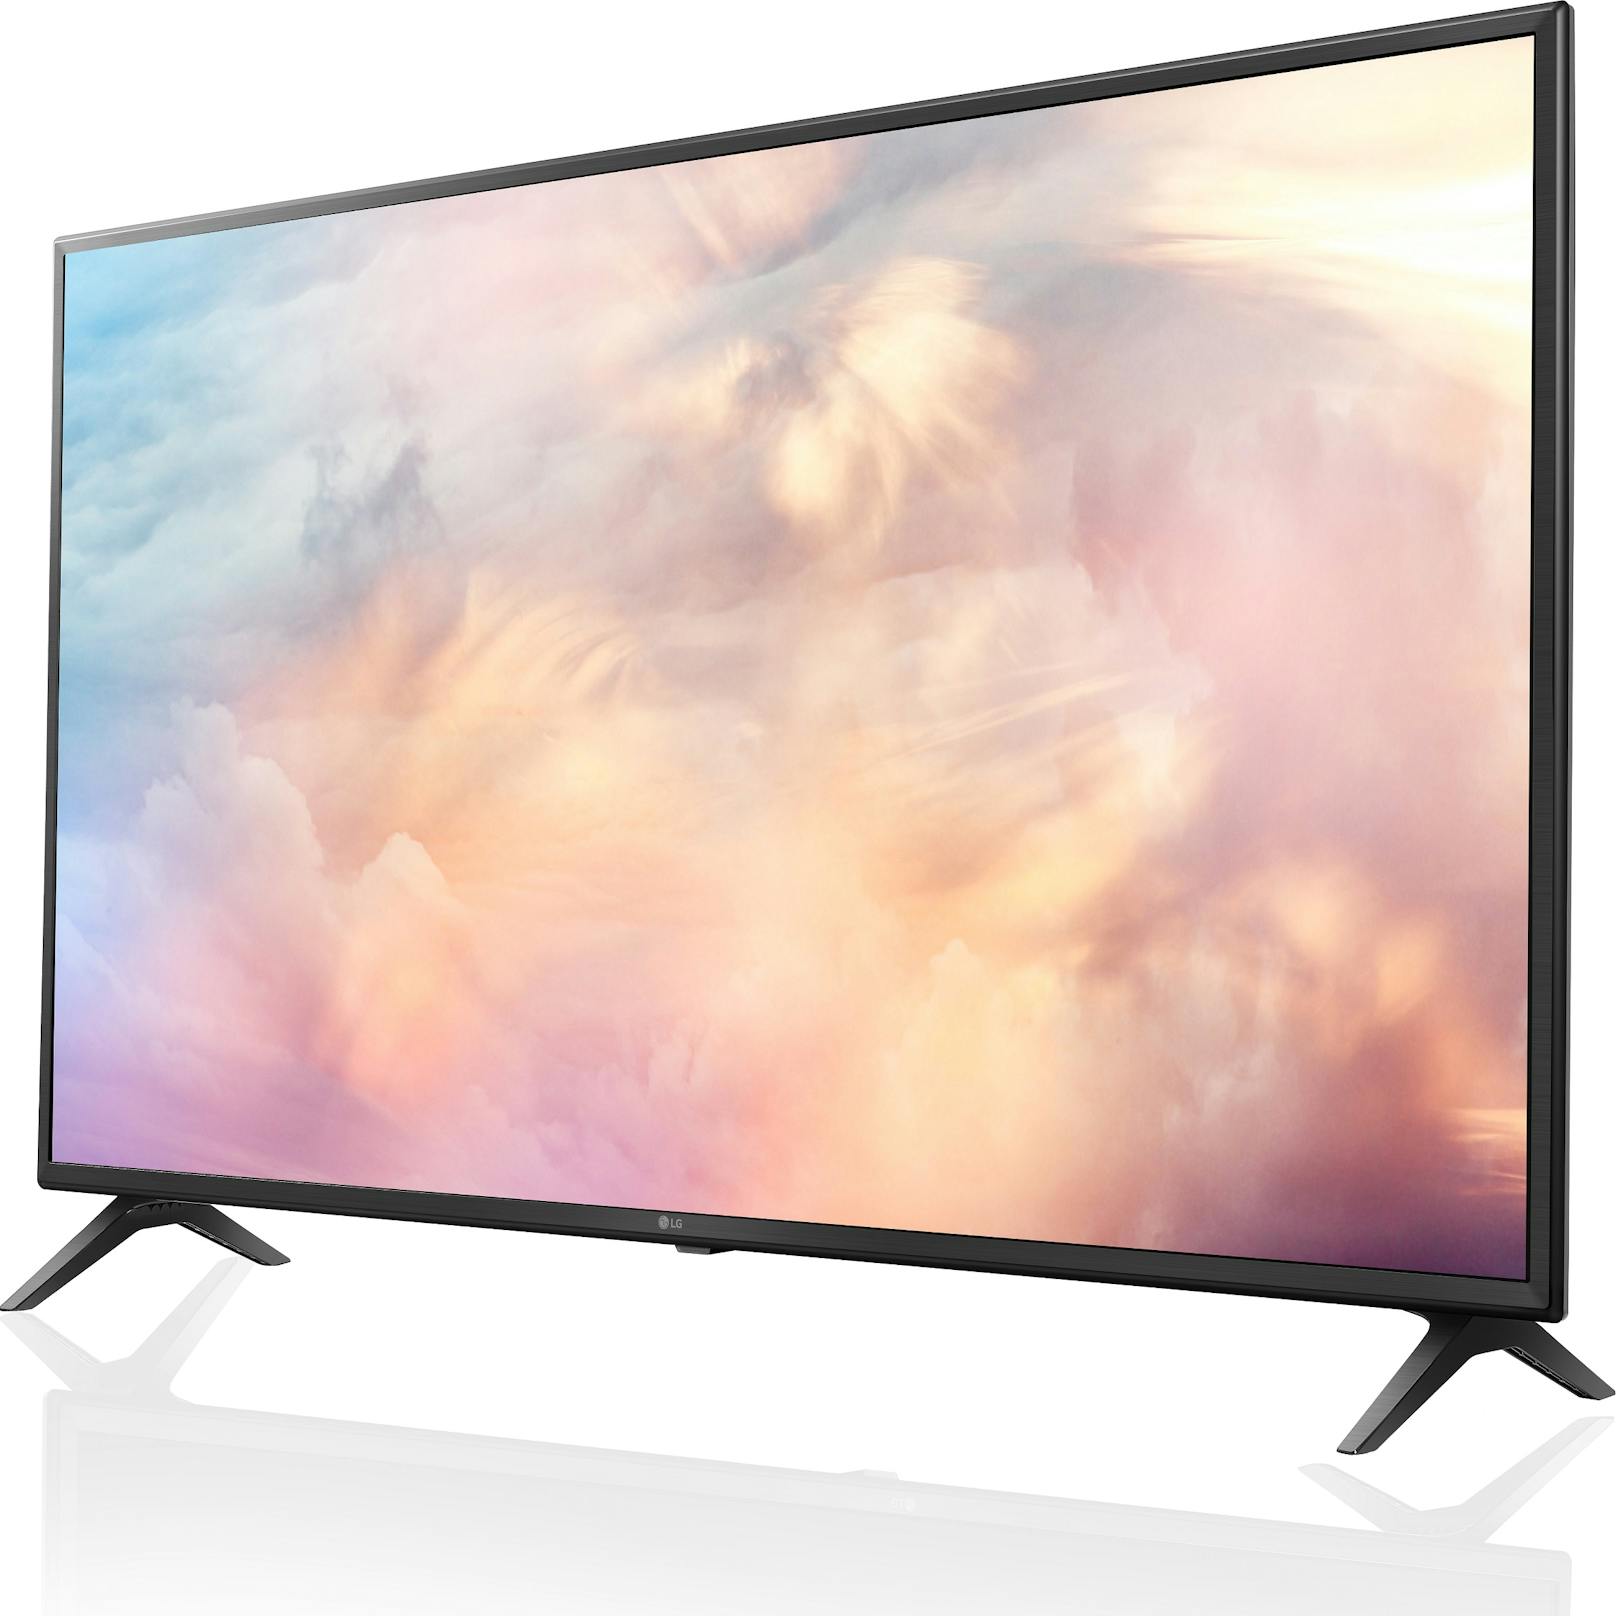 Aktion zum Launch: LG schenkt einen 43″ UHD 4K TV zum LG Velvet 5G dazu.